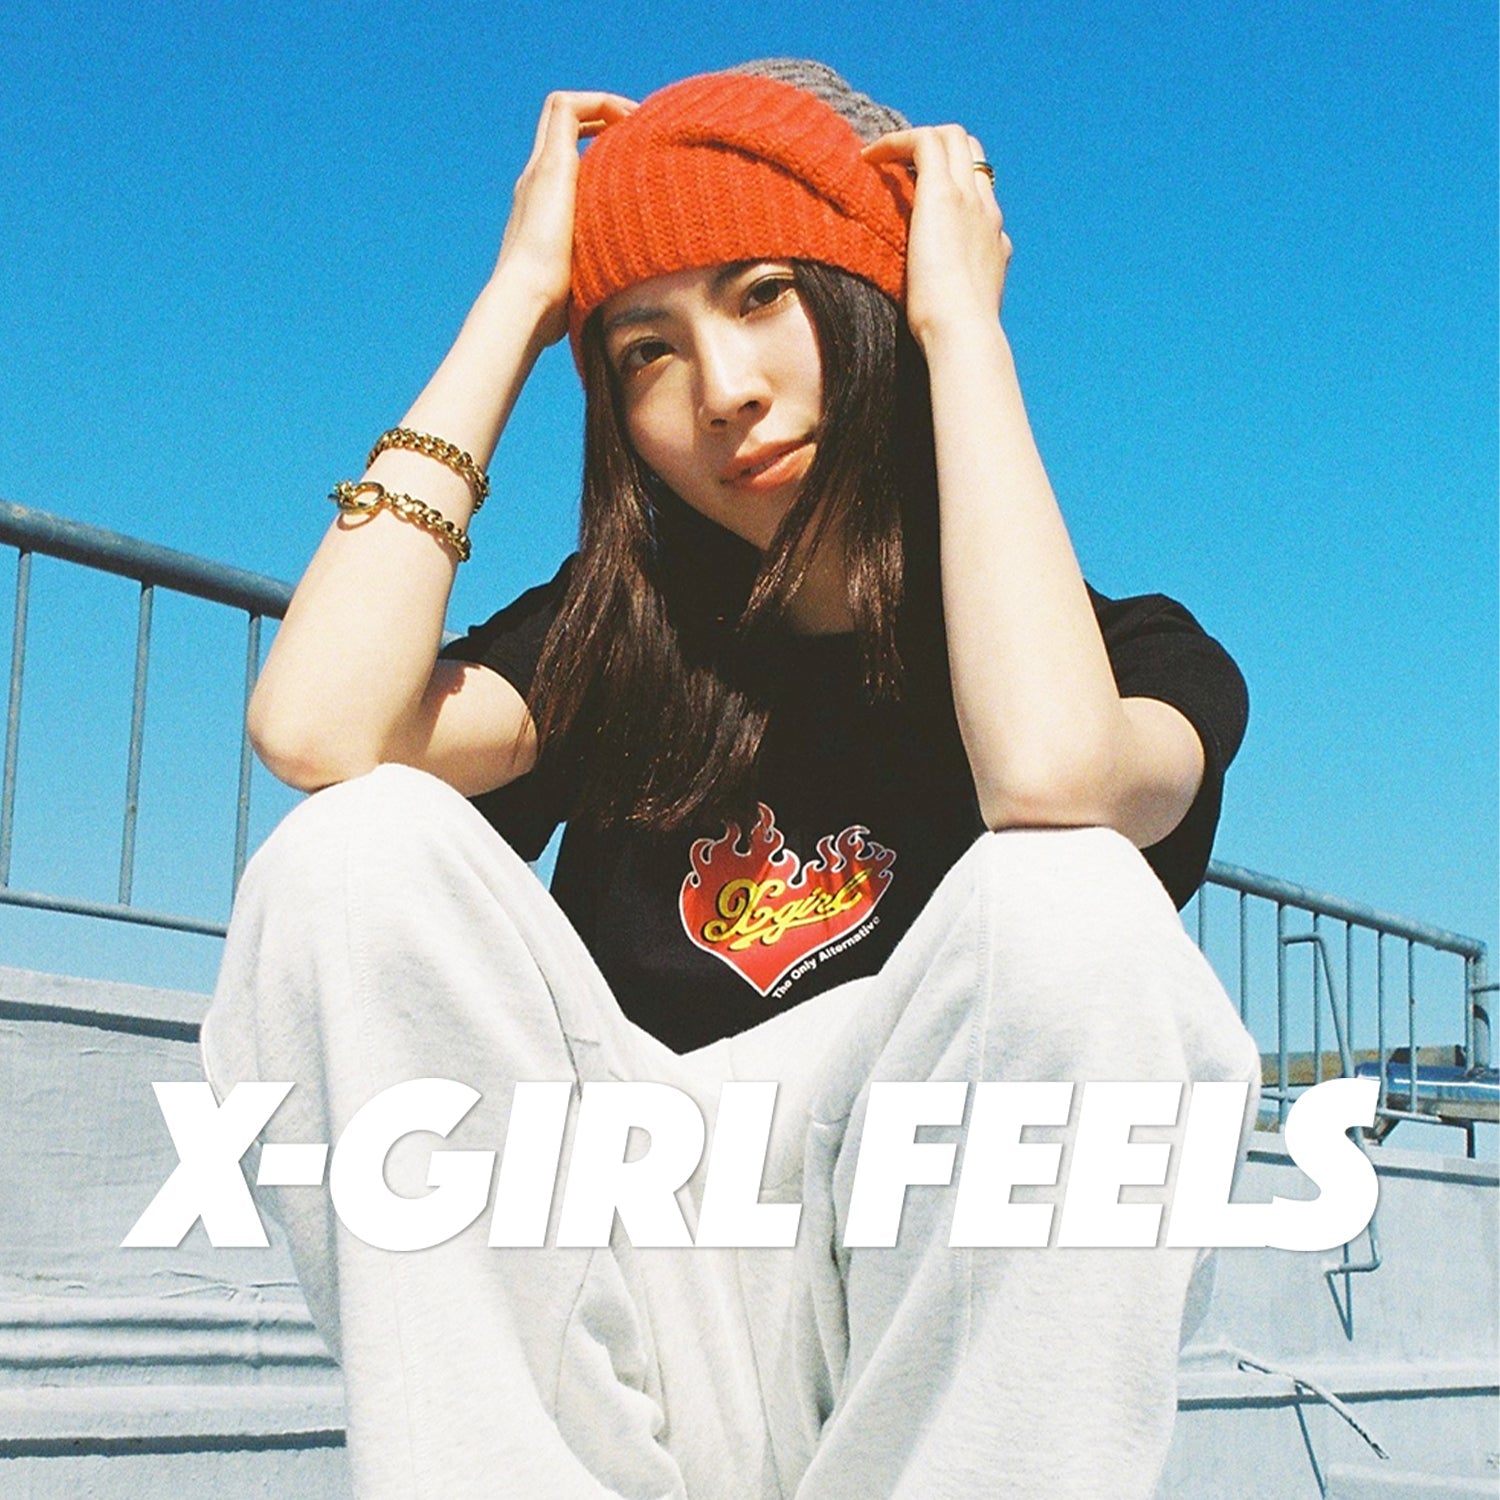 X-girl feels vol.6